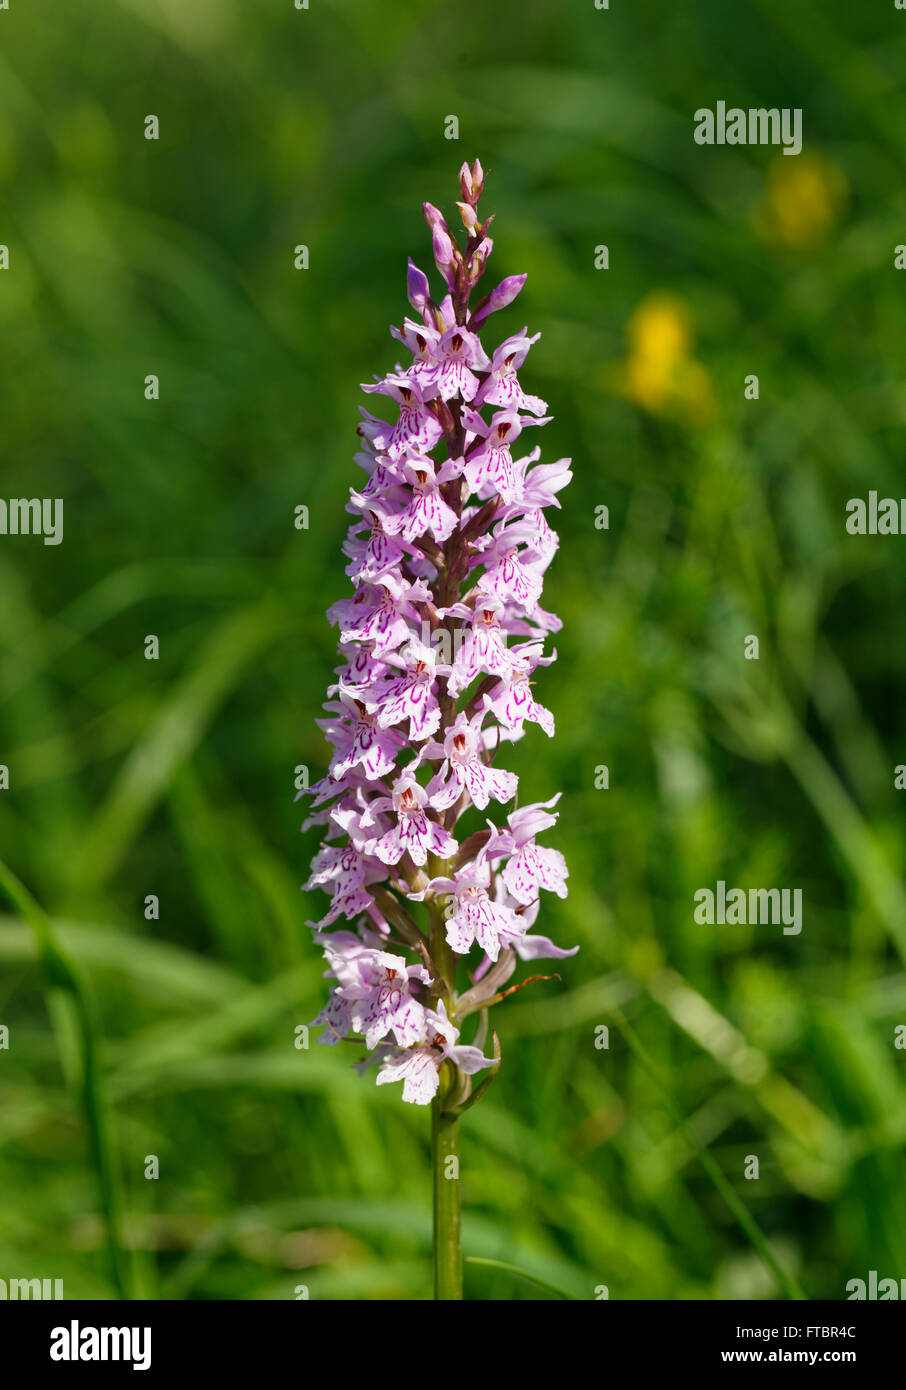 Heide gesichtet Orchidee (Dactylorhiza Maculata), Orchidee, Isar Banken, Geretsried, Bayern, Deutschland Stockfoto